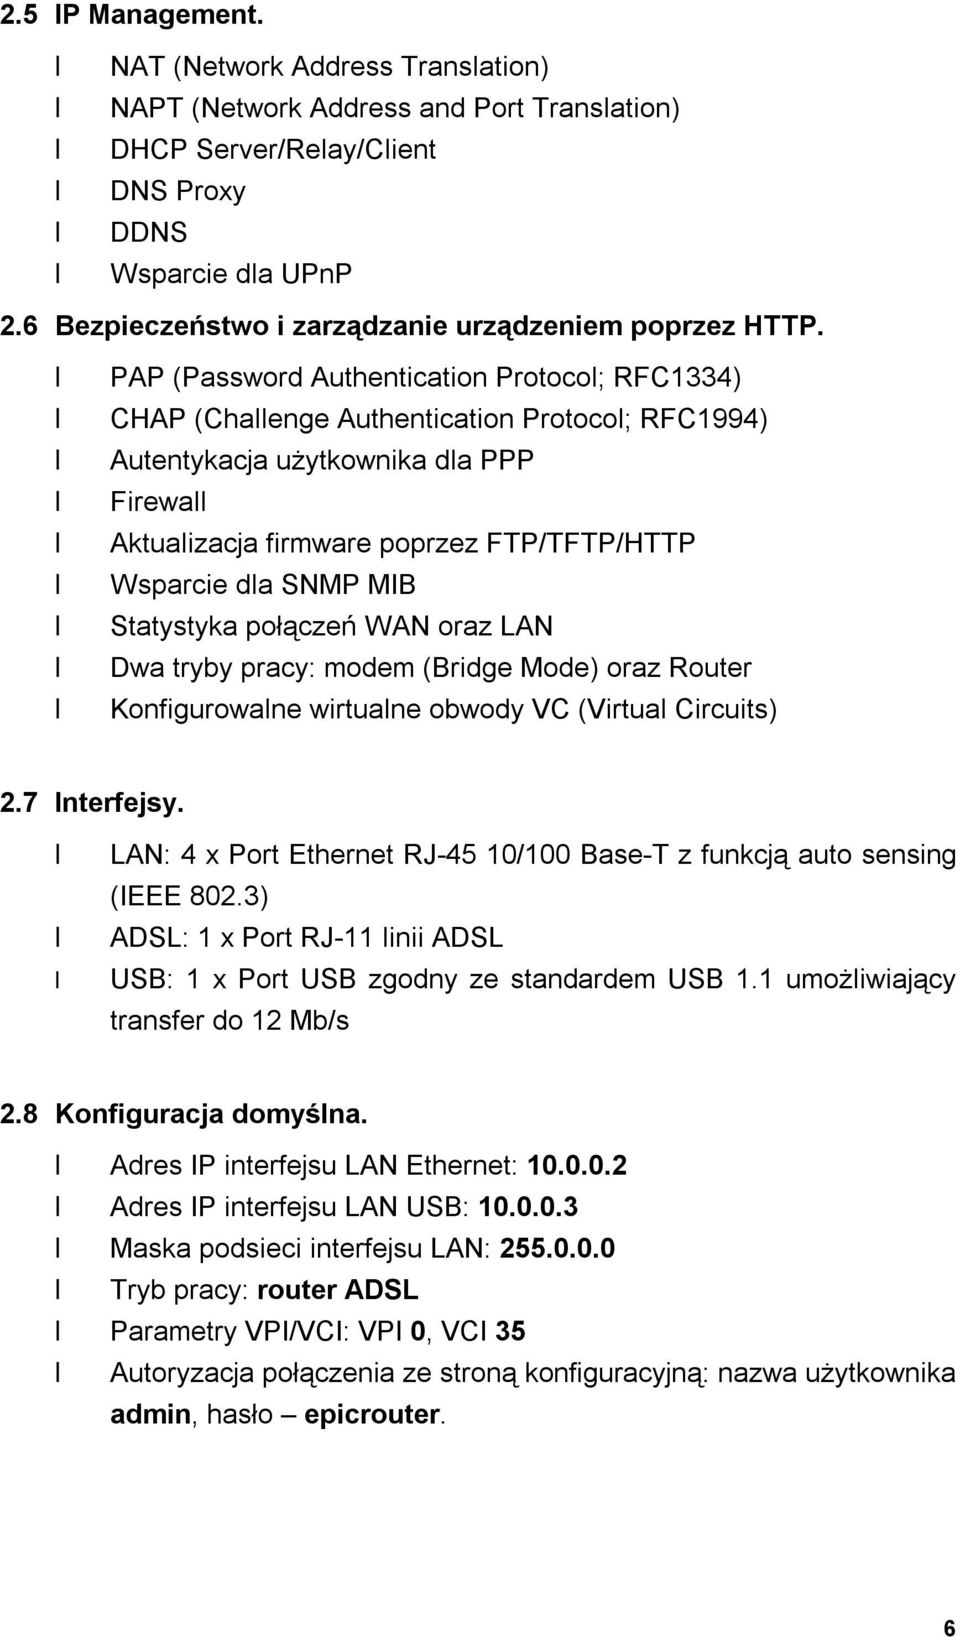 PAP (Password Authentication Protocol; RFC1334) CHAP (Challenge Authentication Protocol; RFC1994) Autentykacja użytkownika dla PPP Firewall Aktualizacja firmware poprzez FTP/TFTP/HTTP Wsparcie dla